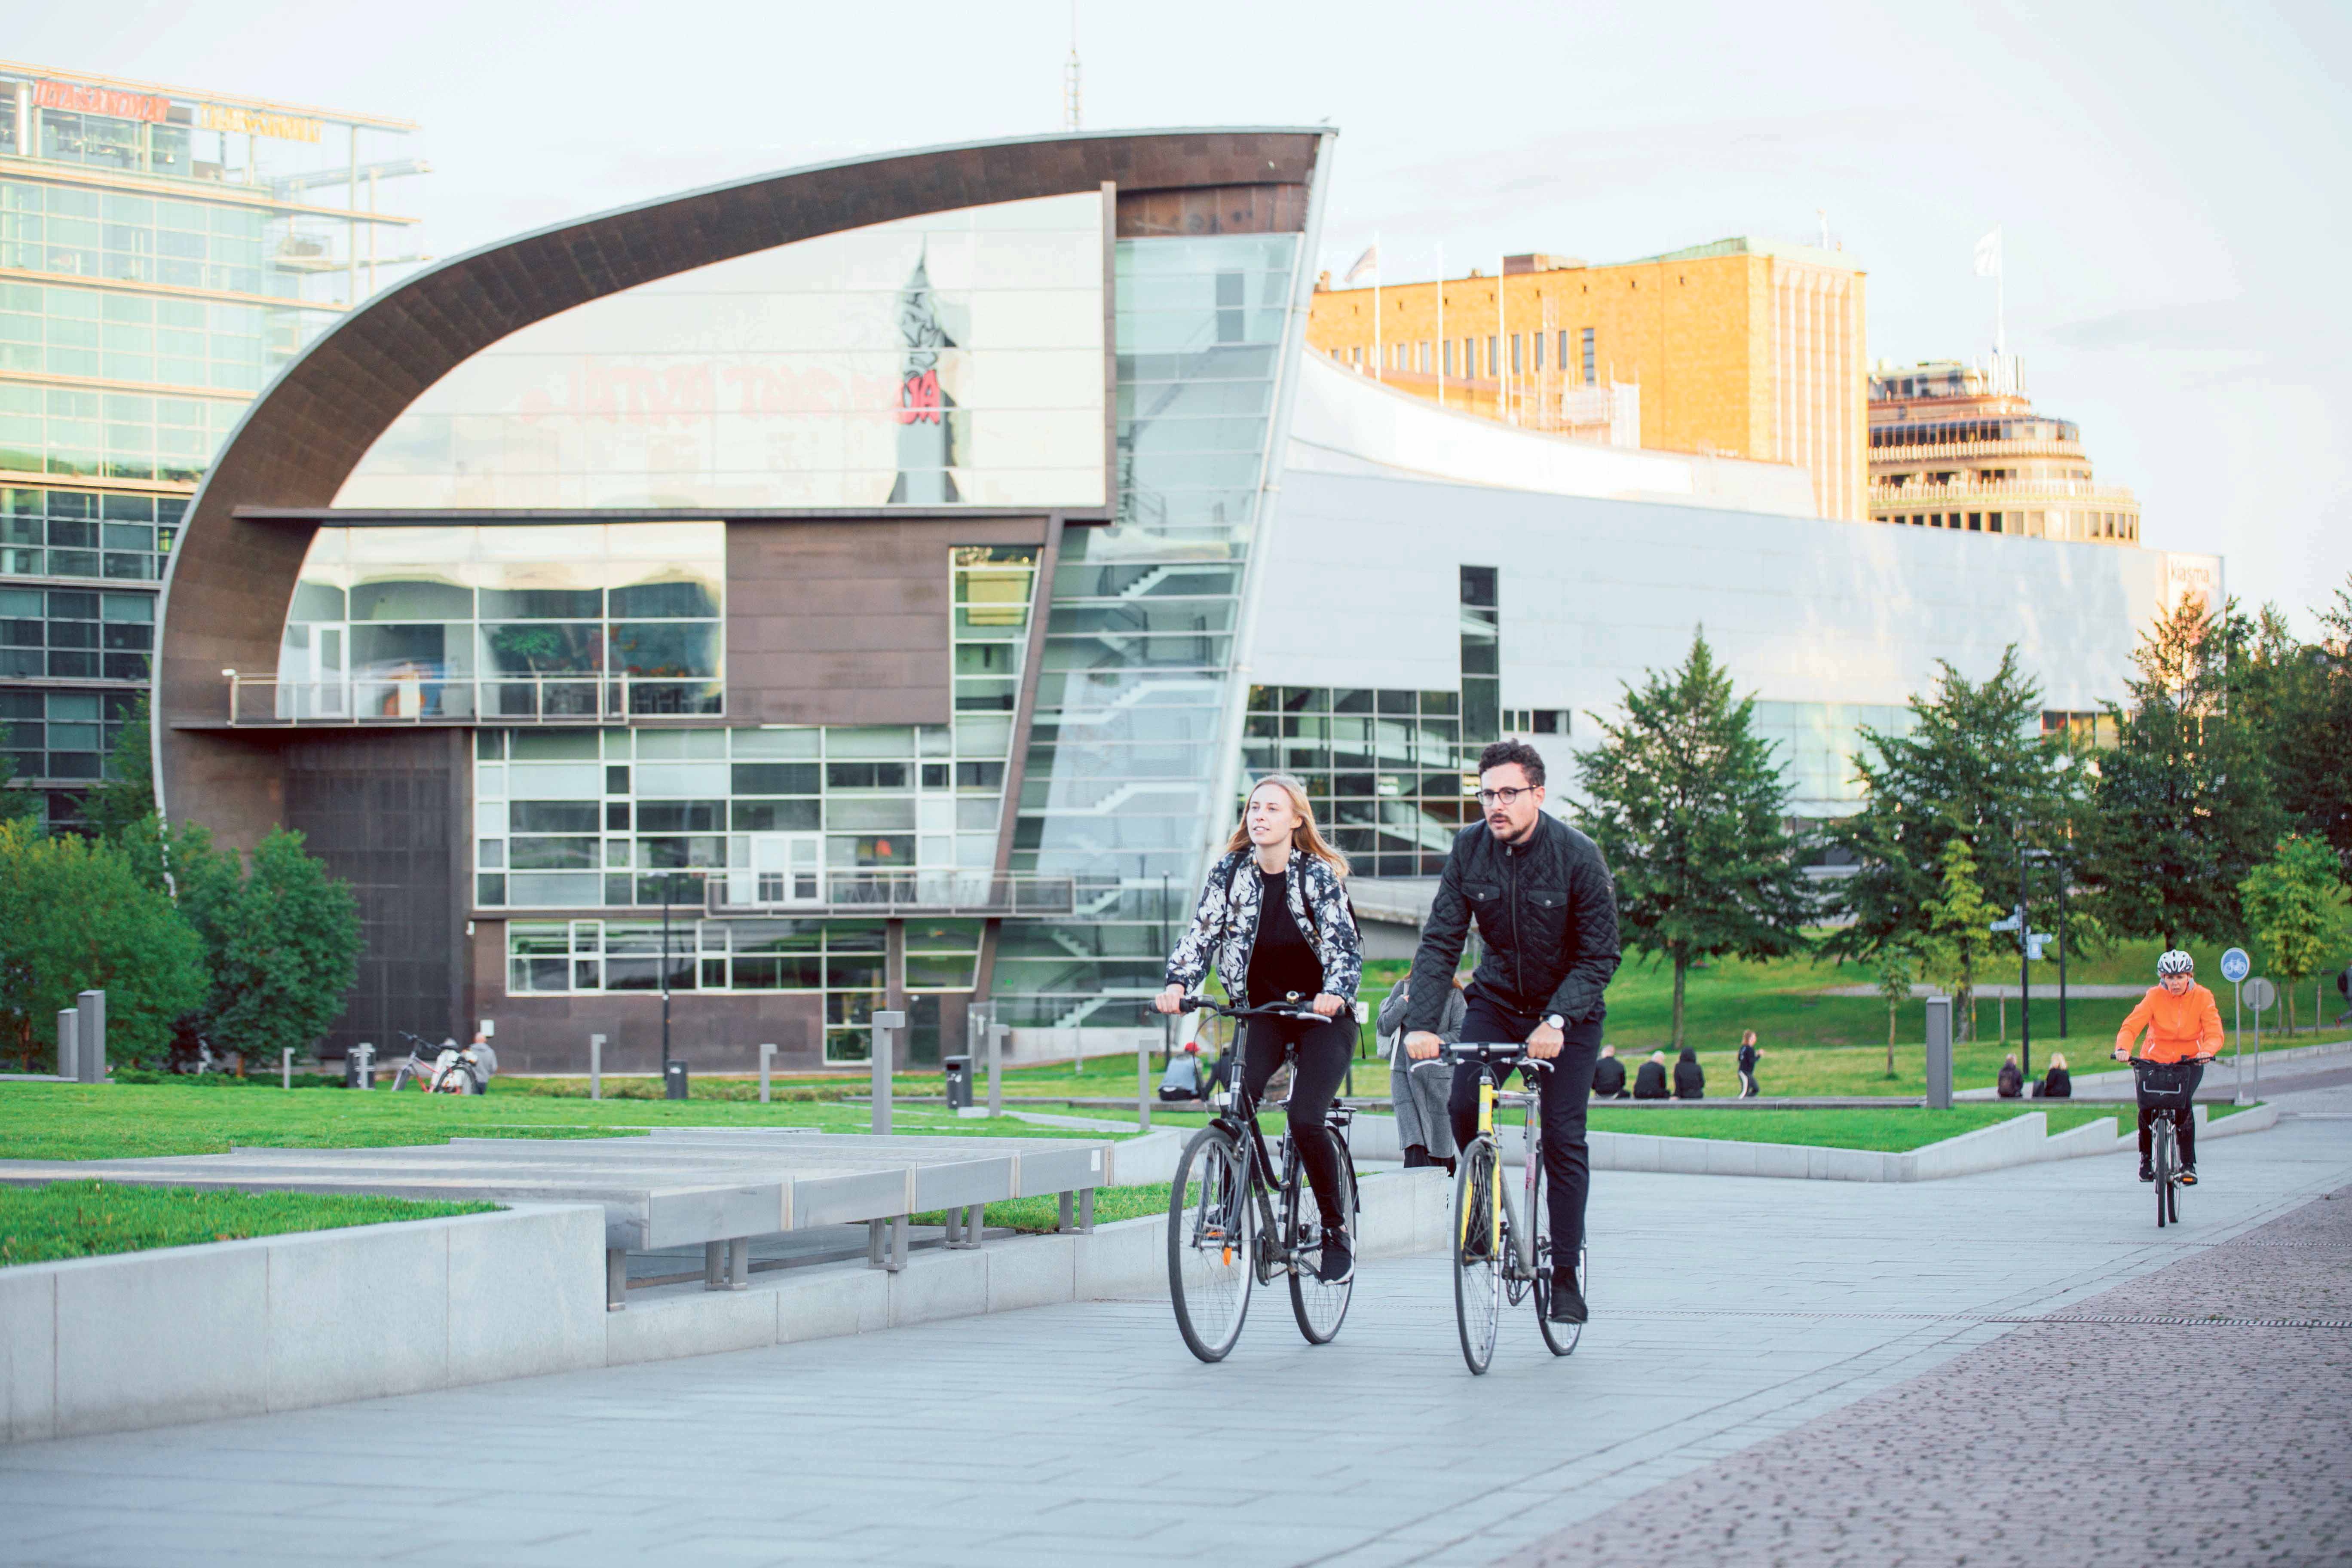 Deux personnes en vélo dans un environnement urbain.